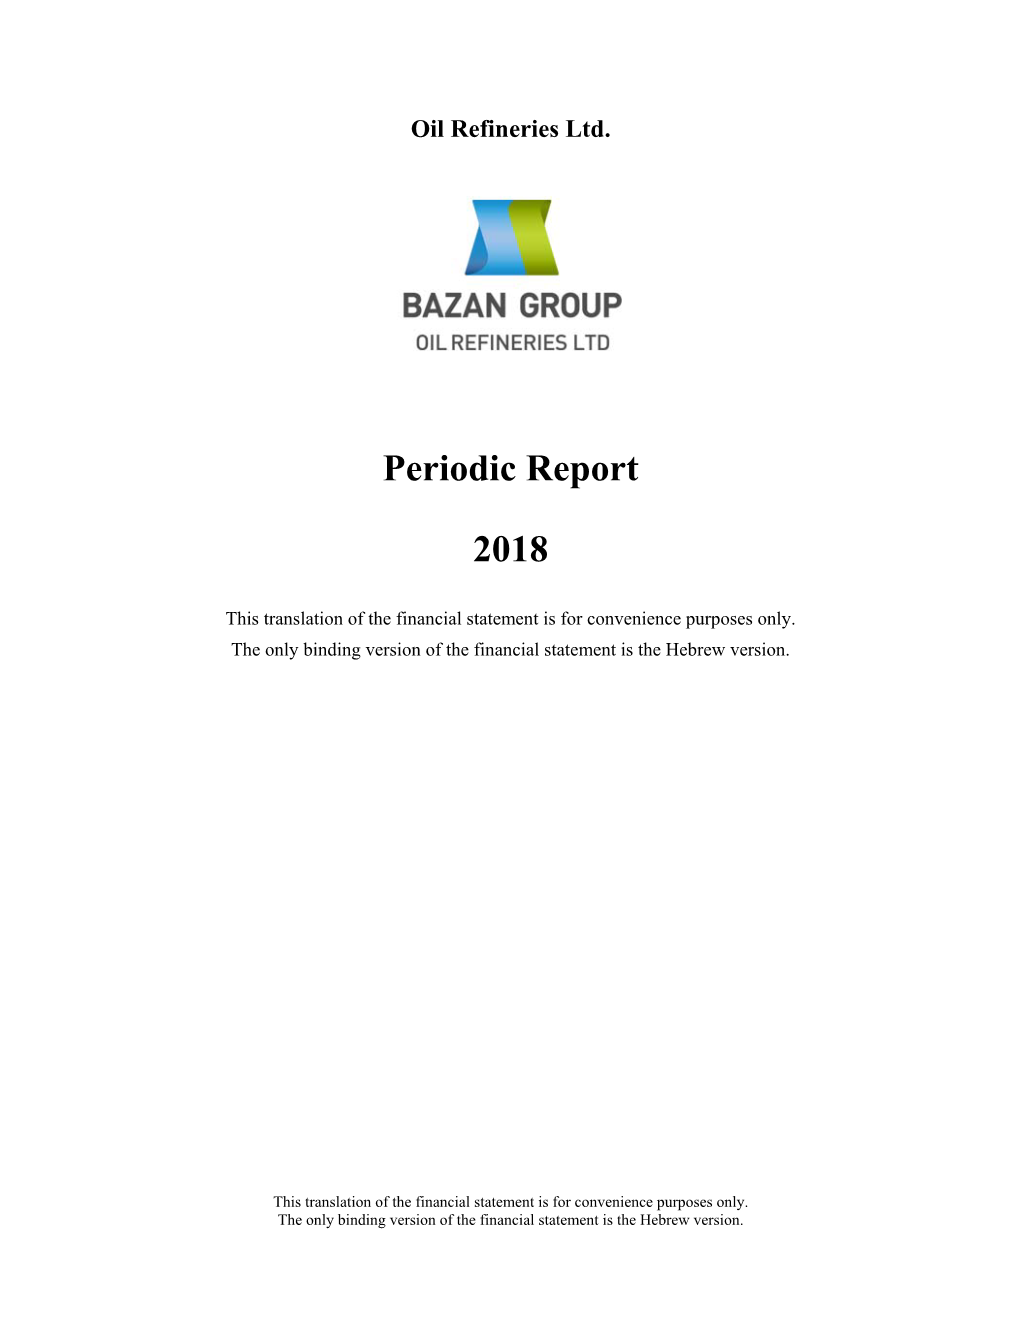 Periodic Report 2018